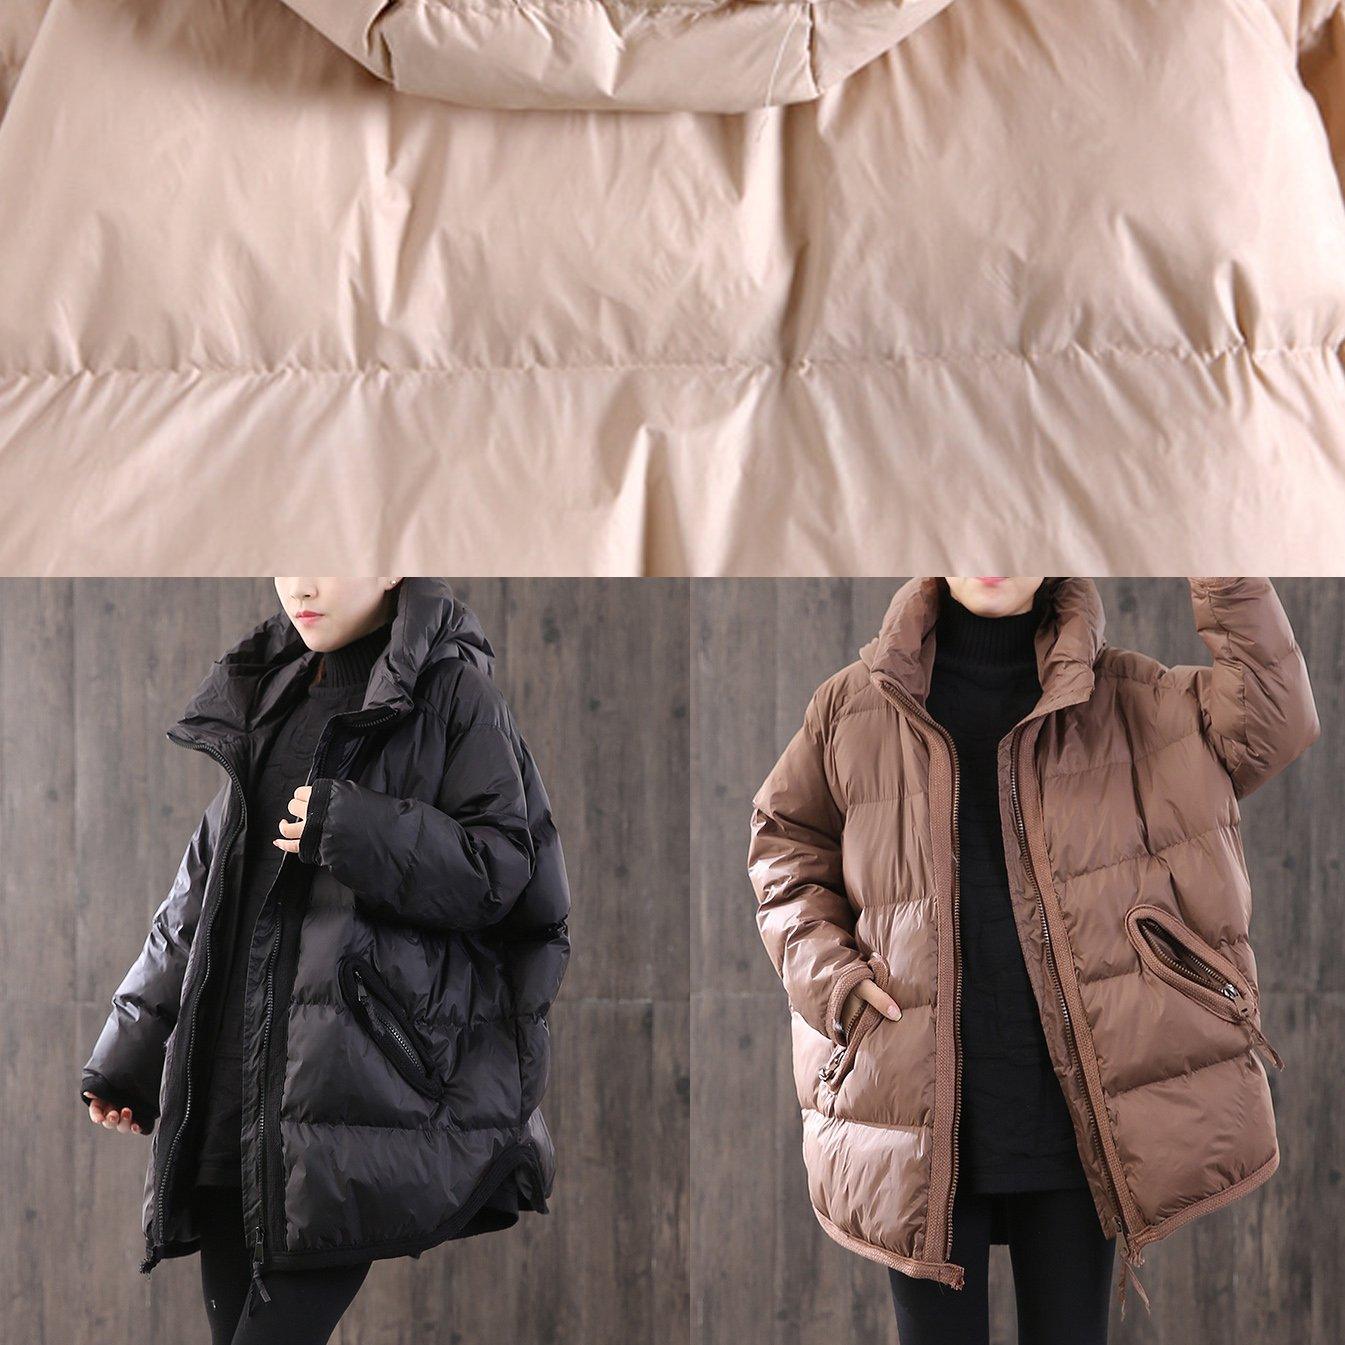 women black thick down jacket woman Loose fitting hooded winter jacket side open Elegant winter outwear - Omychic